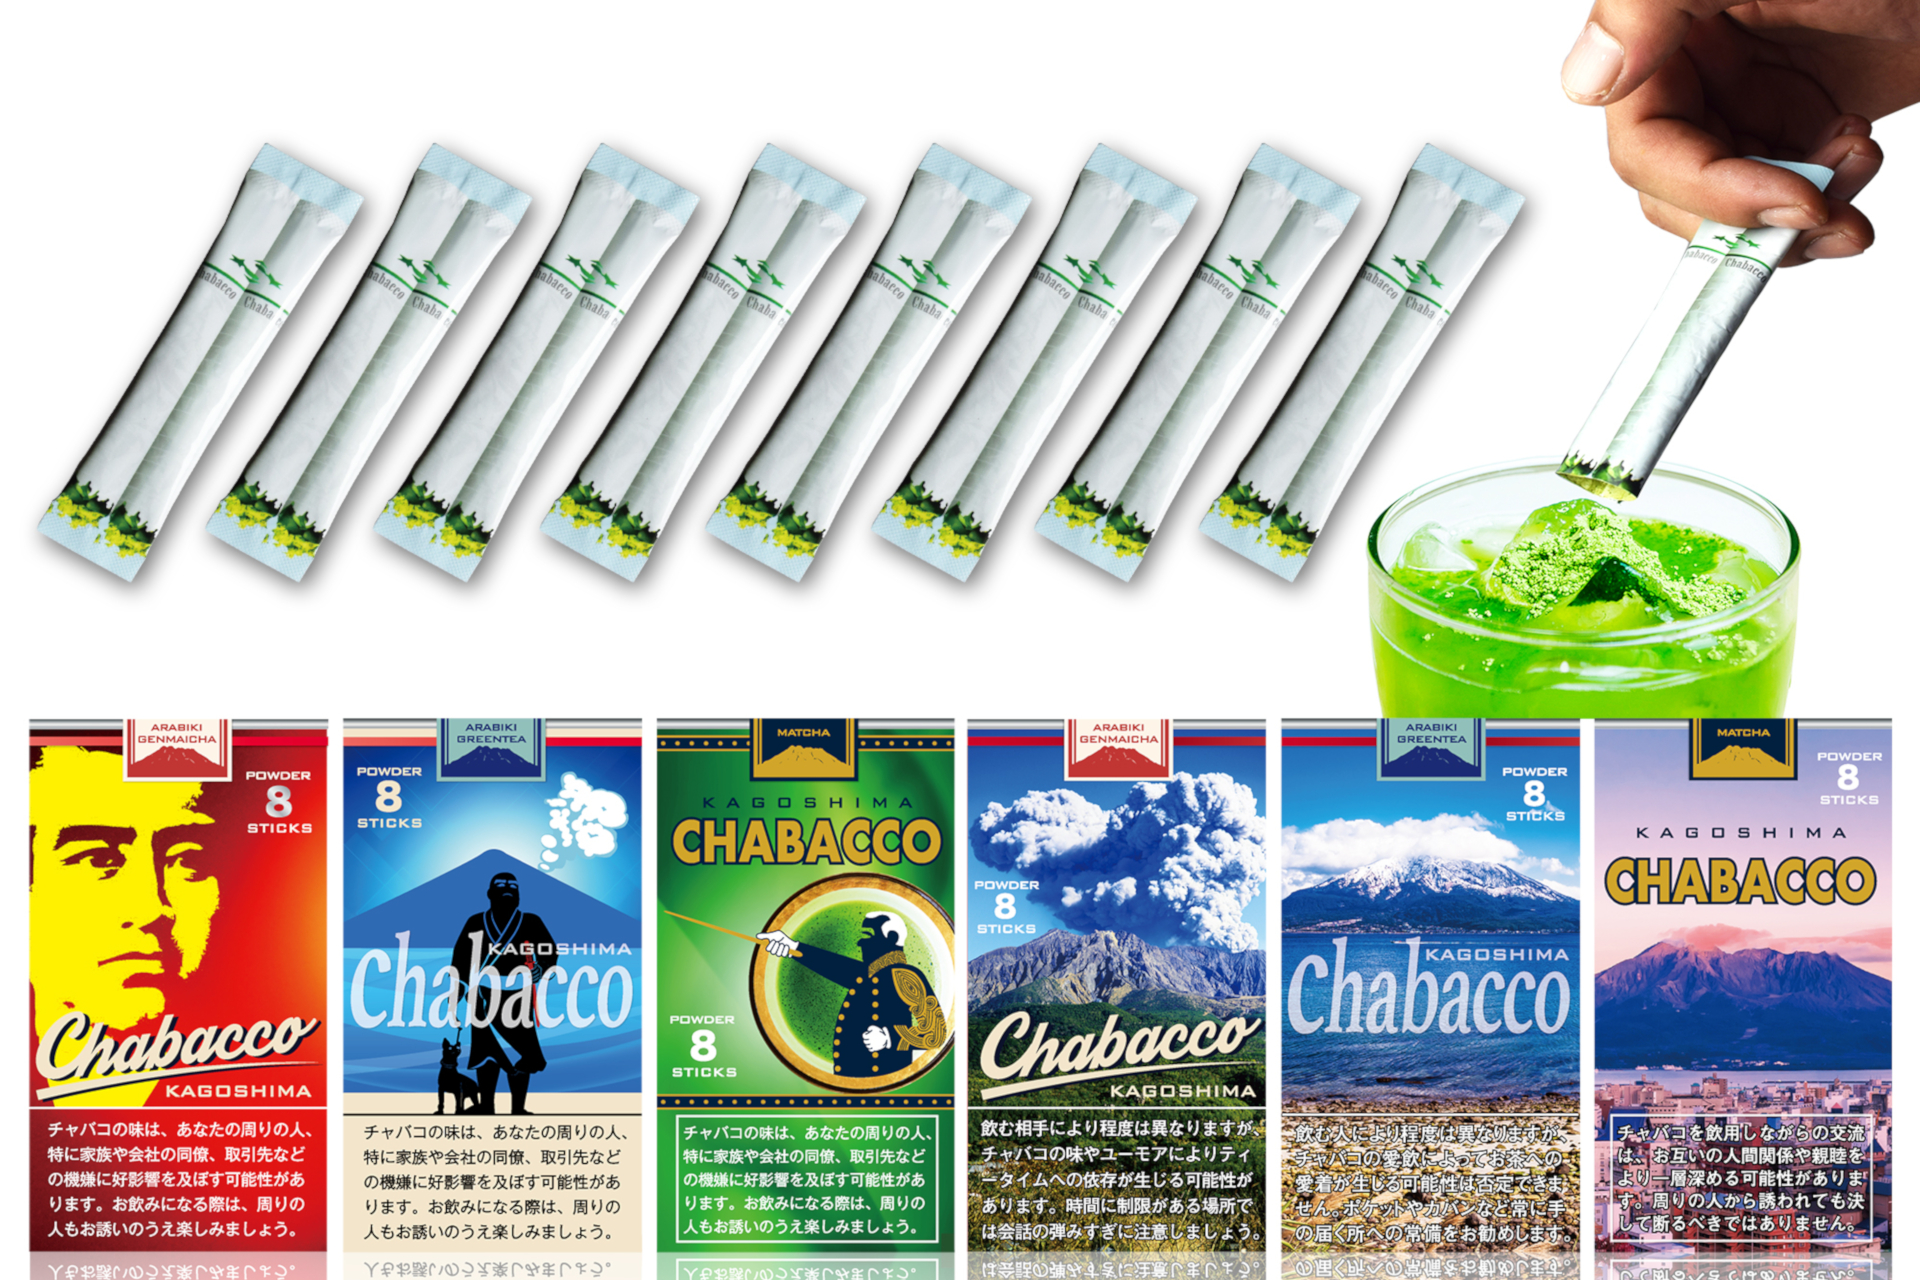 鹿児島県産の茶葉を使った「鹿児島チャバコ」5月1日発売 - グルメ Watch